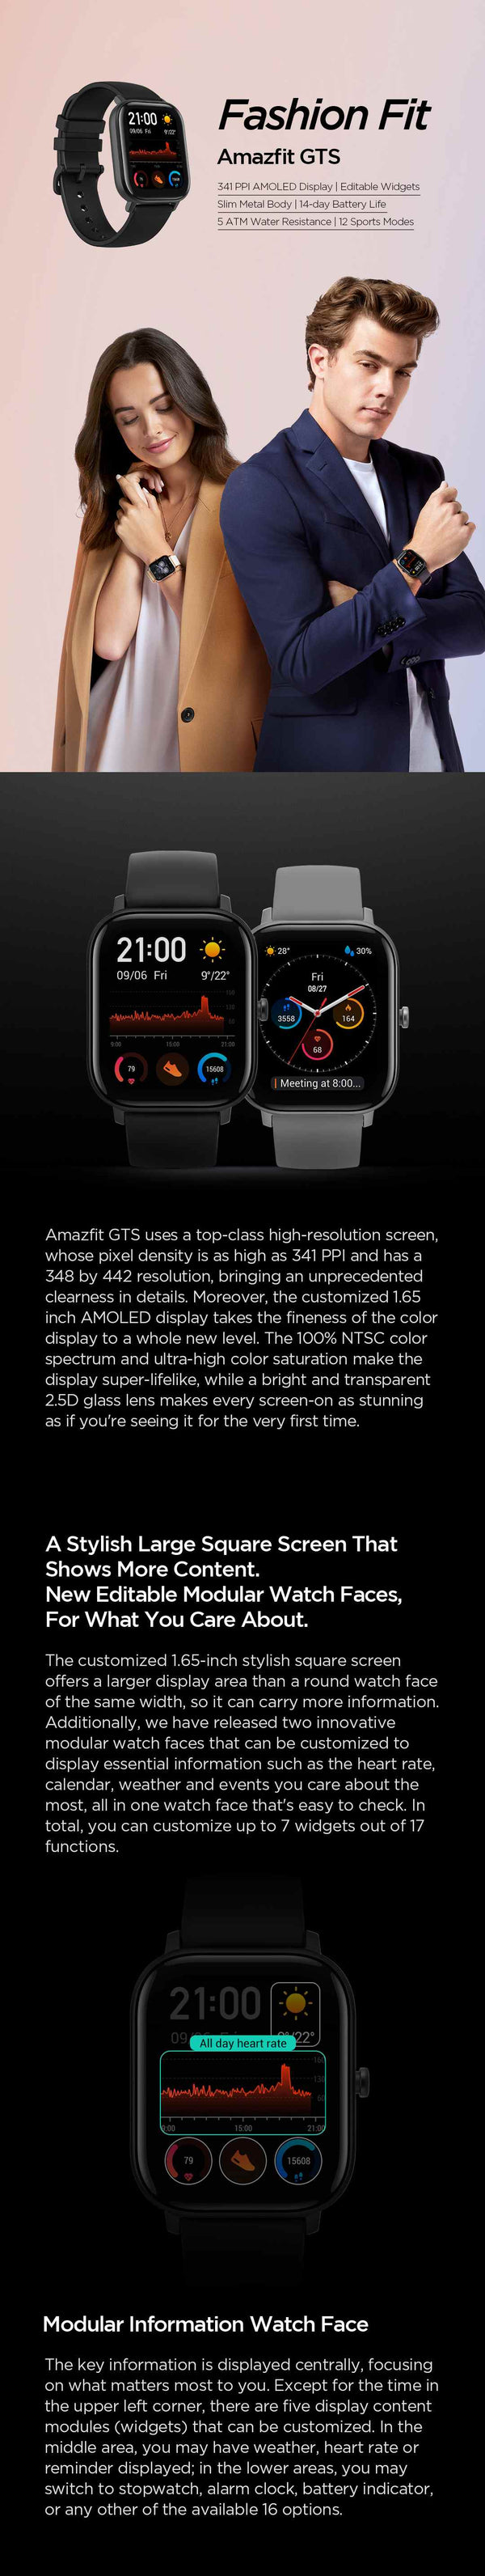 Smart Watch BT5.0 AMOLED Screen Heart Rate Sleep Wristband GPS+GLONASS 5ATM Waterproof Sport Smart Watch | Vimost Shop.